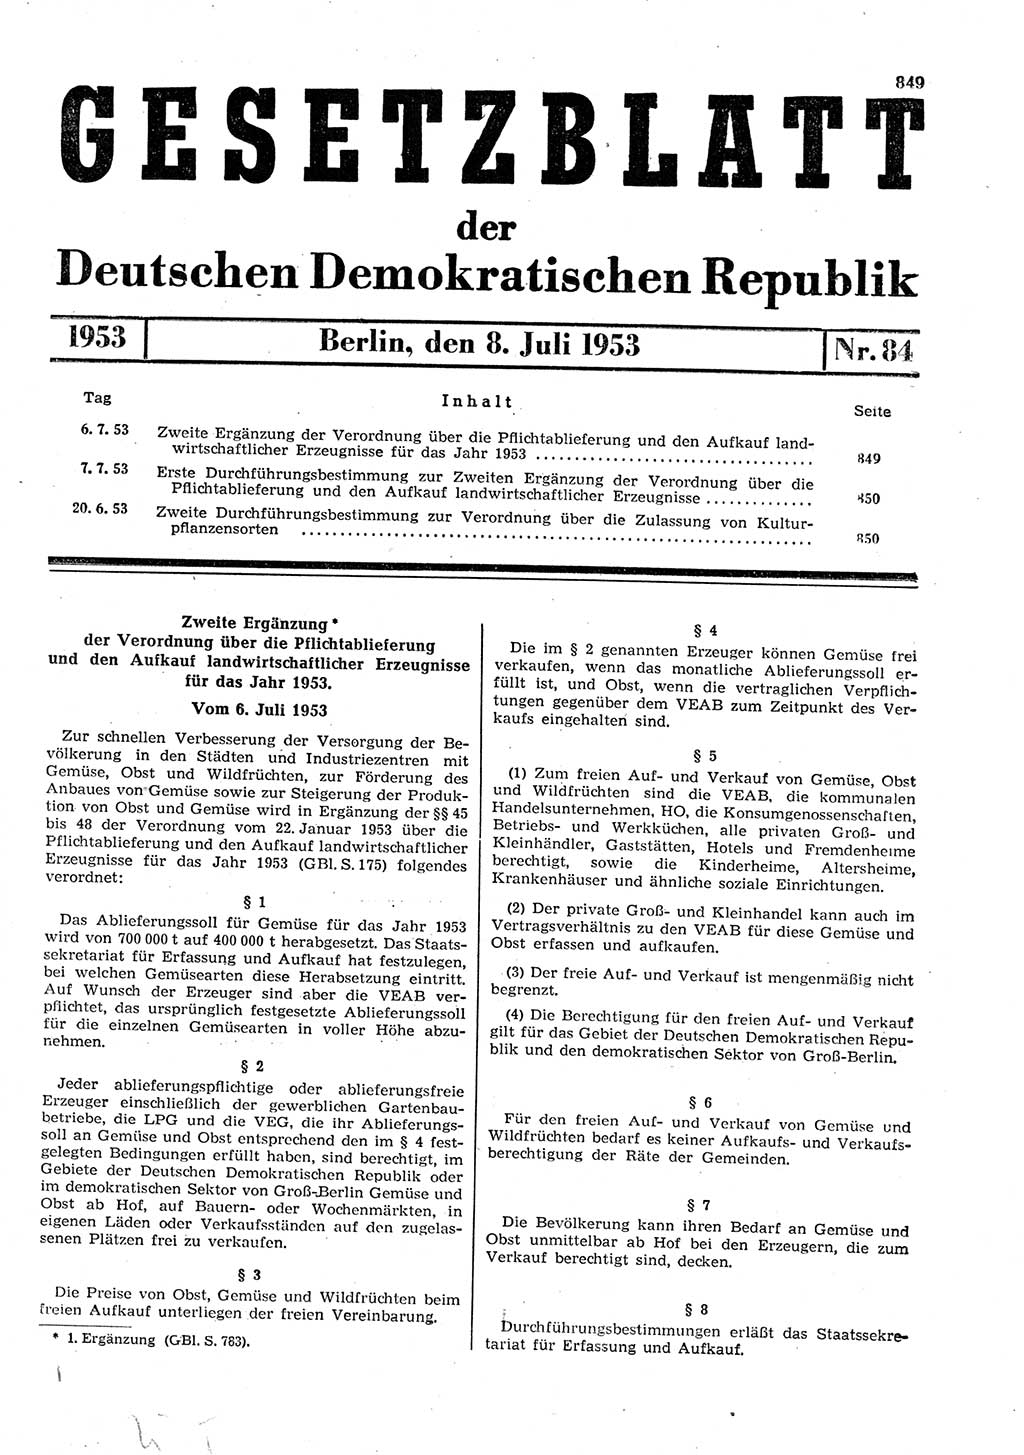 Gesetzblatt (GBl.) der Deutschen Demokratischen Republik (DDR) 1953, Seite 849 (GBl. DDR 1953, S. 849)